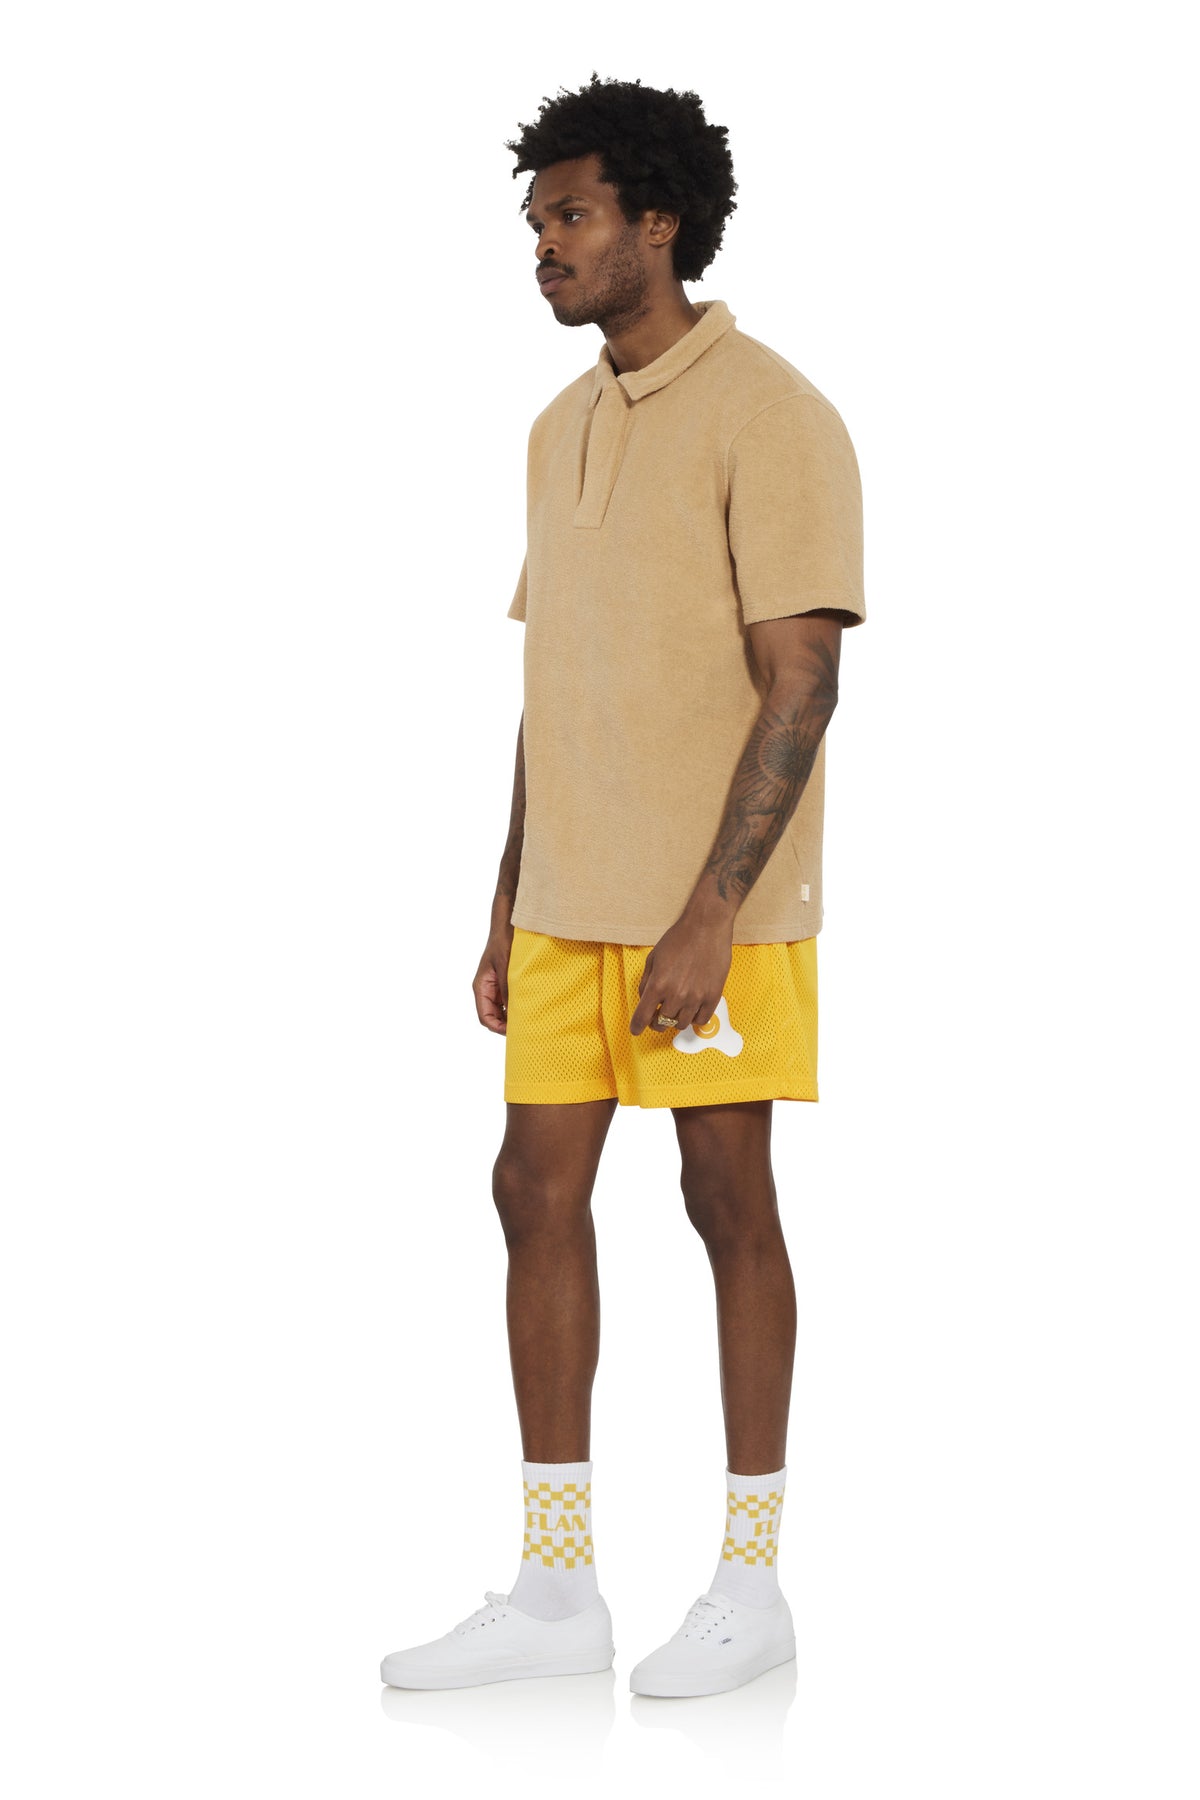 Egg Smile - Basketball Shorts - Yellow